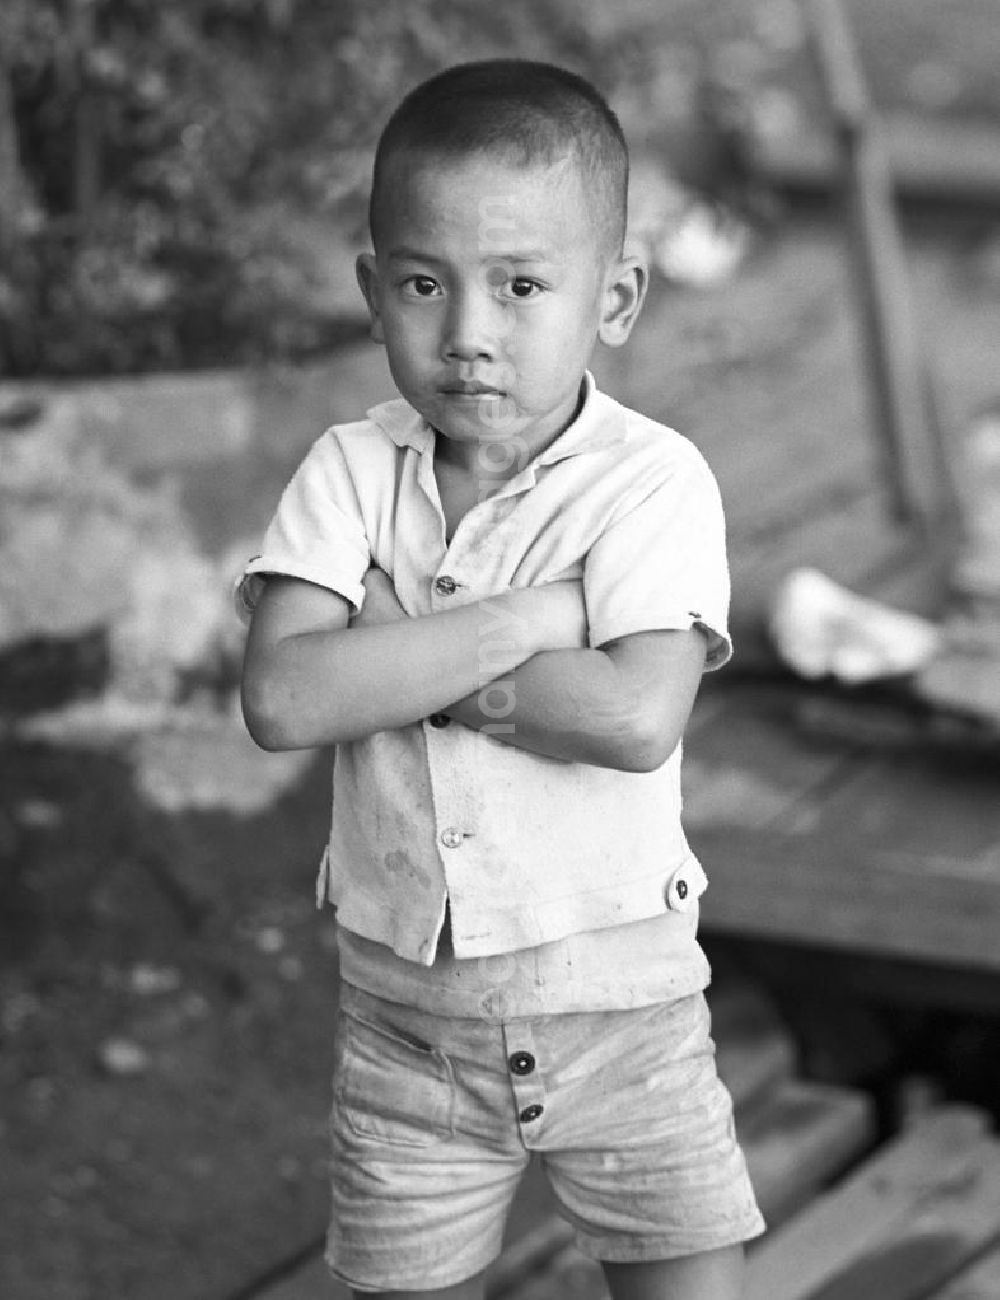 GDR photo archive: Vientiane - Junge in Vientiane in der Demokratischen Volksrepublik Laos.